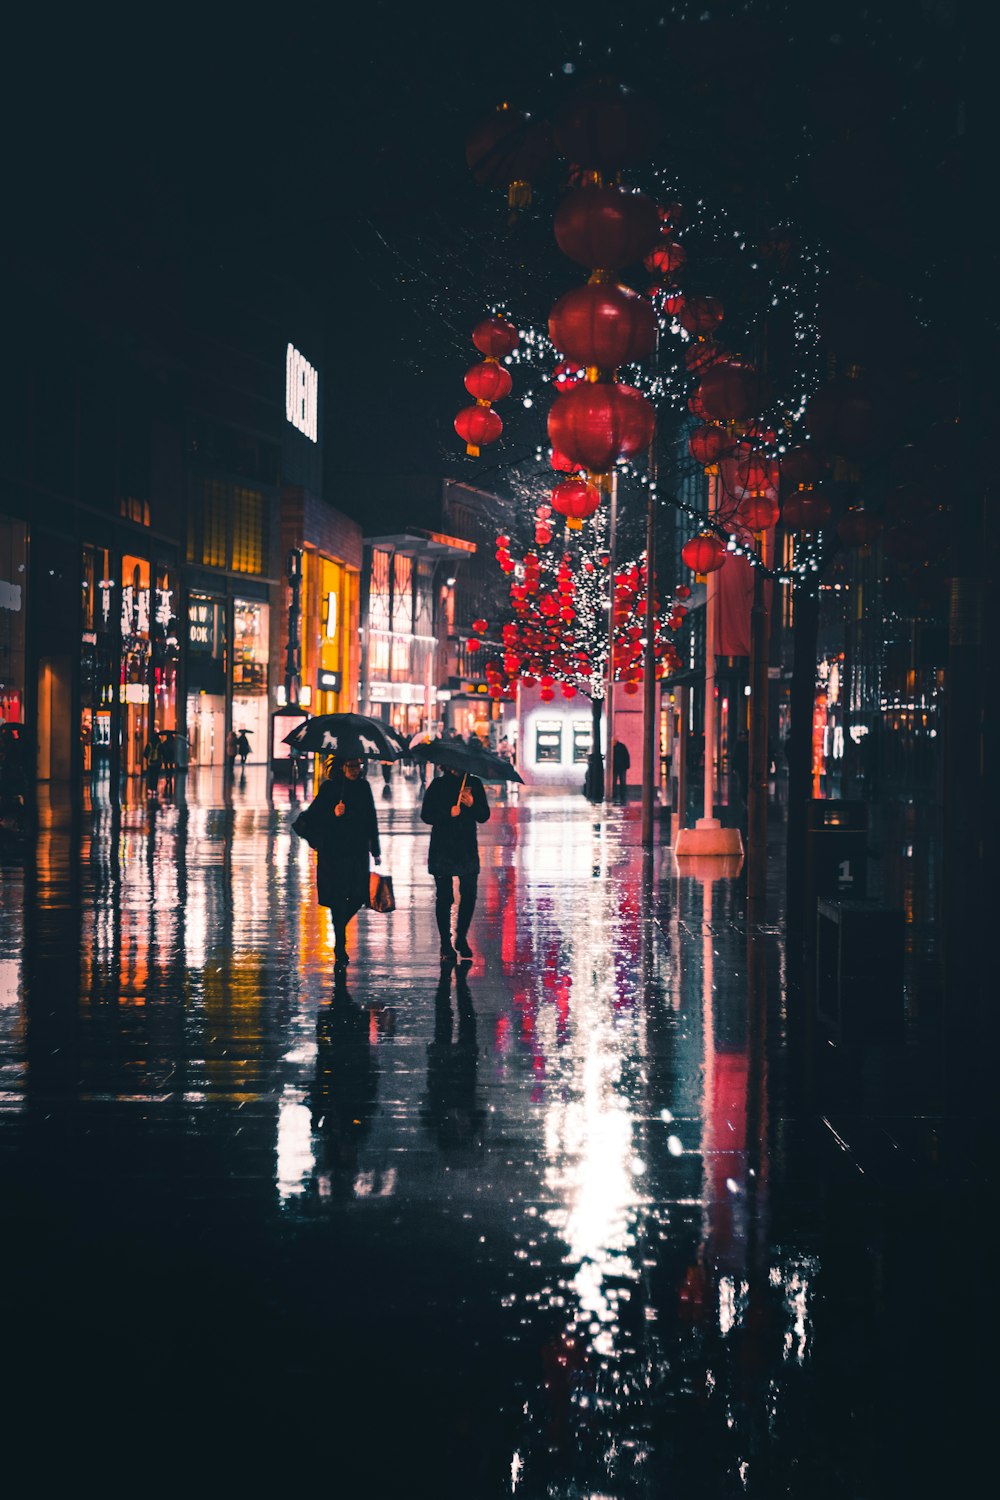 people walking holding umbrella at night